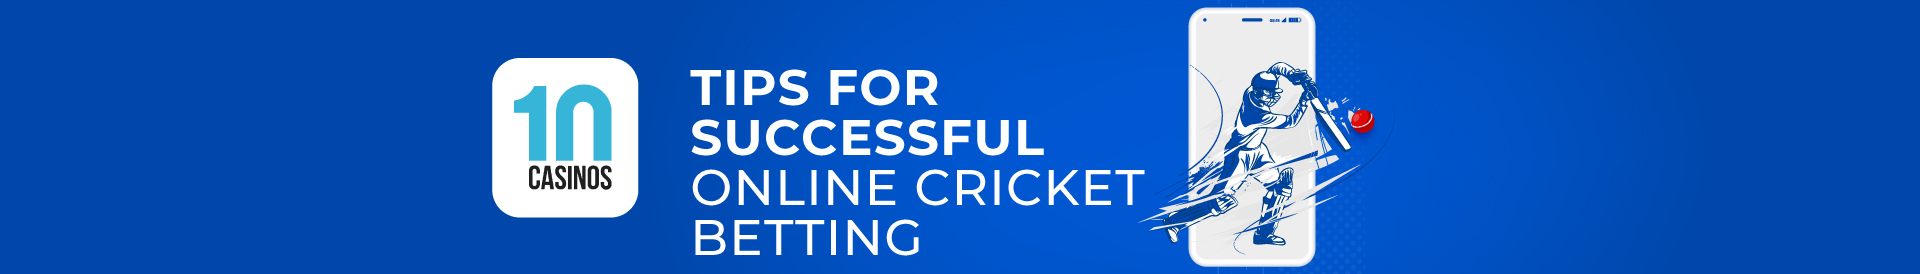 top 10 tips for successful online cricket betting desktop